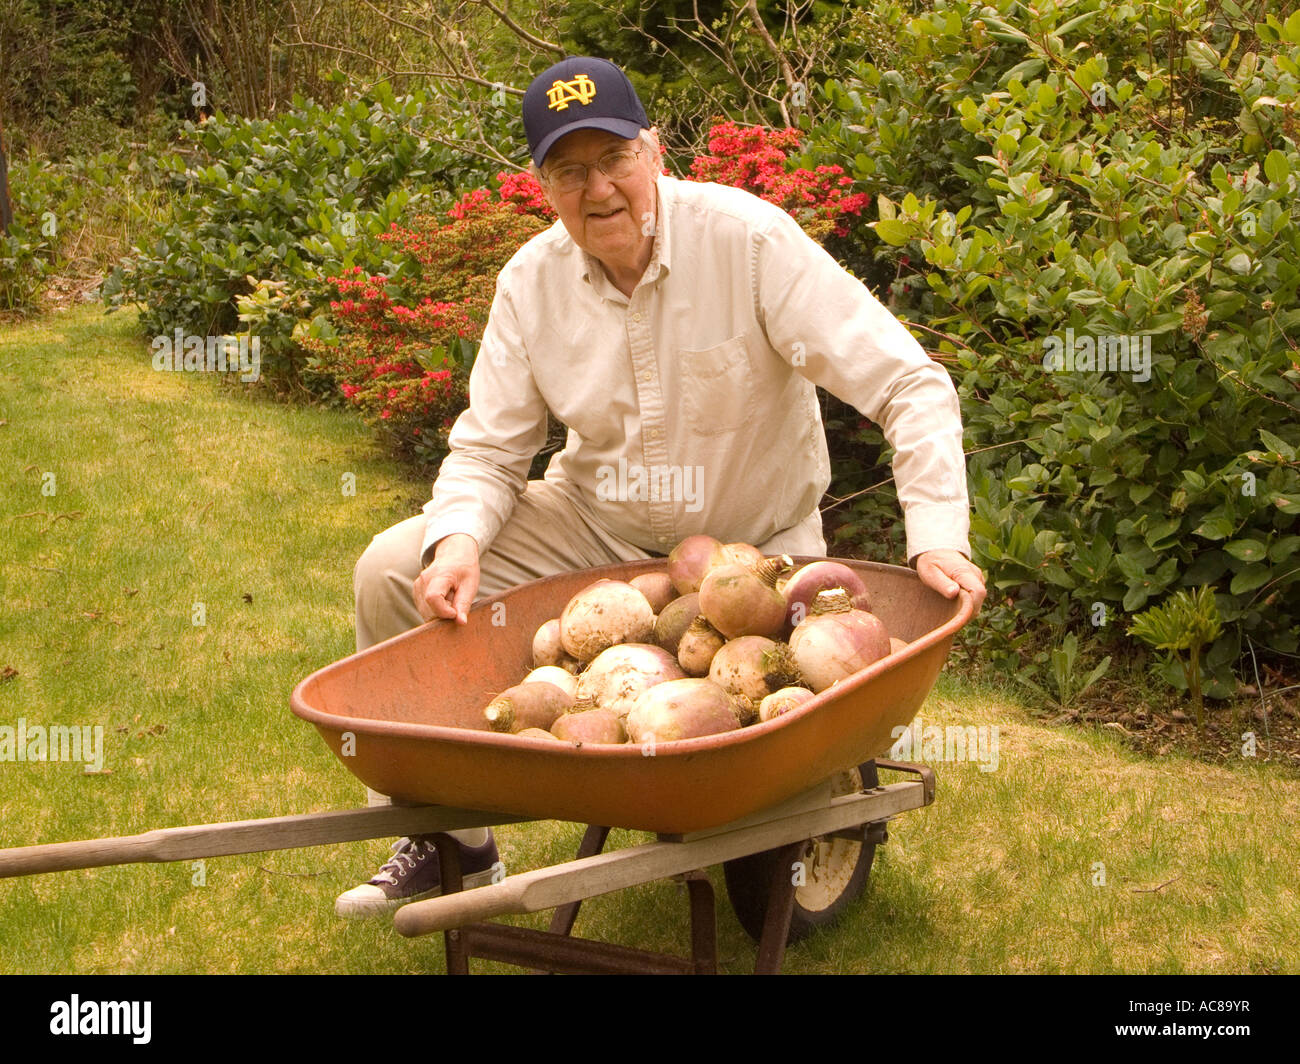 Stolze Gärtner stellt mit dem Ergebnis seiner Arbeit eine Ernte von großen Rüben bereit für den Tisch Stockfoto